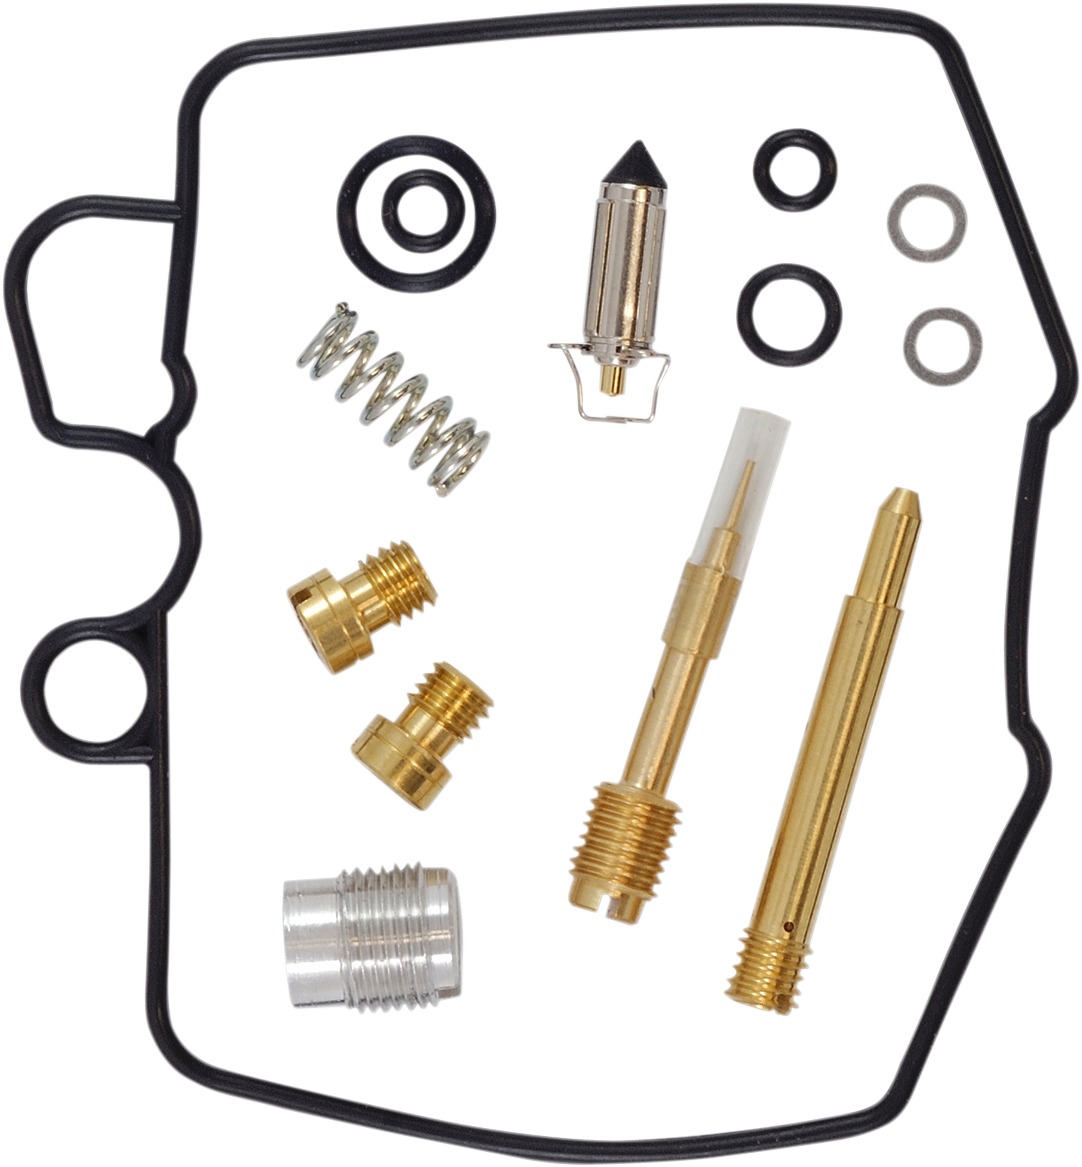 Carburetor Repair Kit - For 1979 Honda CB750K/L - Click Image to Close